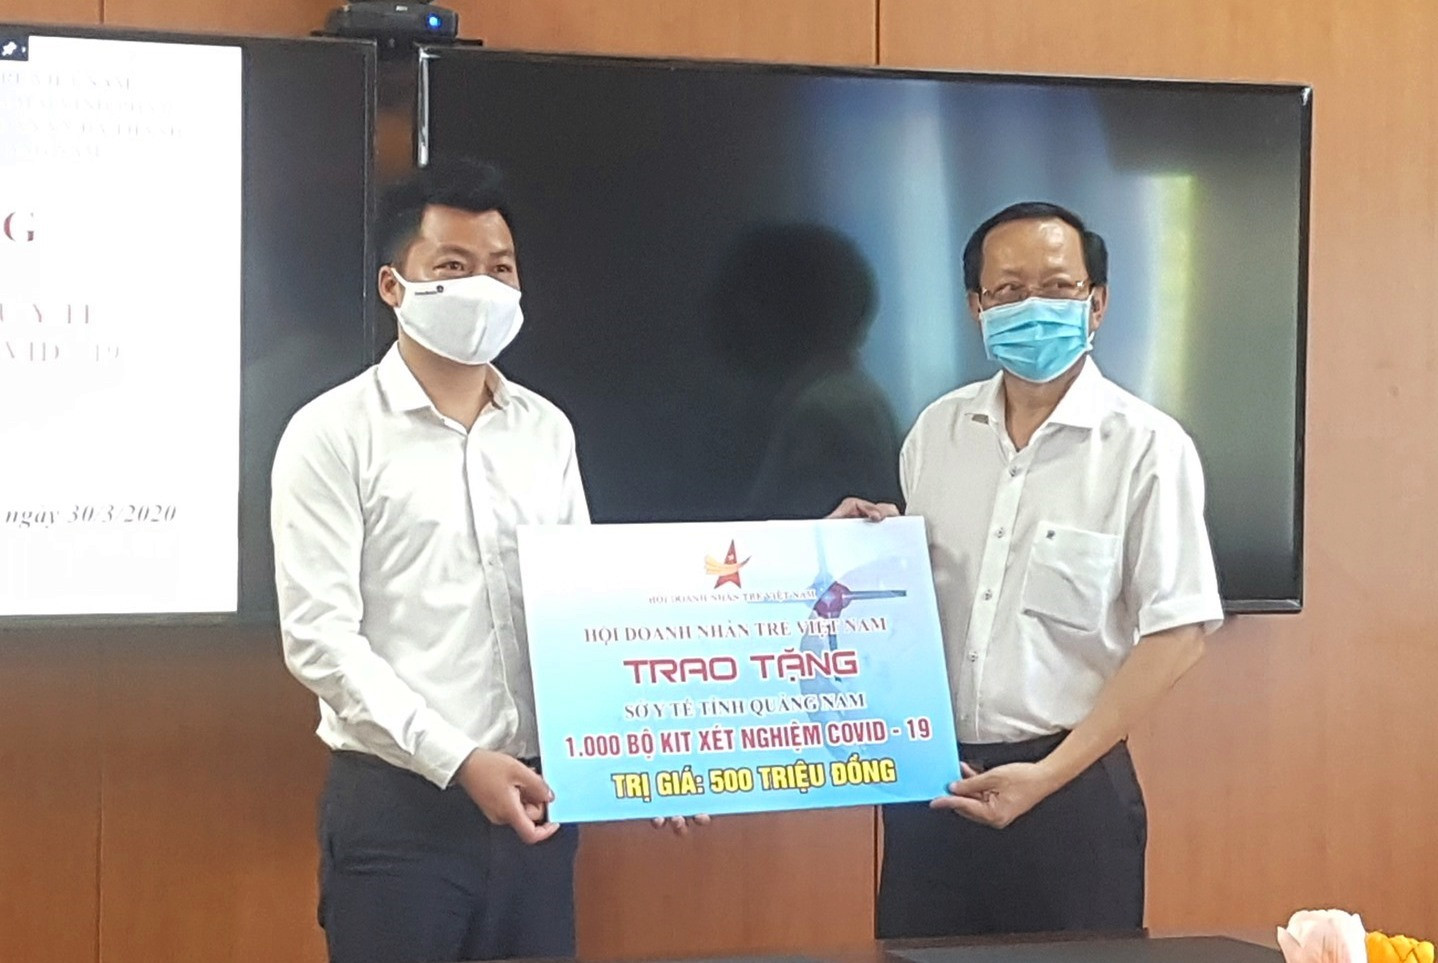 Hội Doanh nhân trẻ Việt Nam tặng 1.000 bộ kít xét nghiệm nhanh Covid-19 trị giá 500 triệu đồng